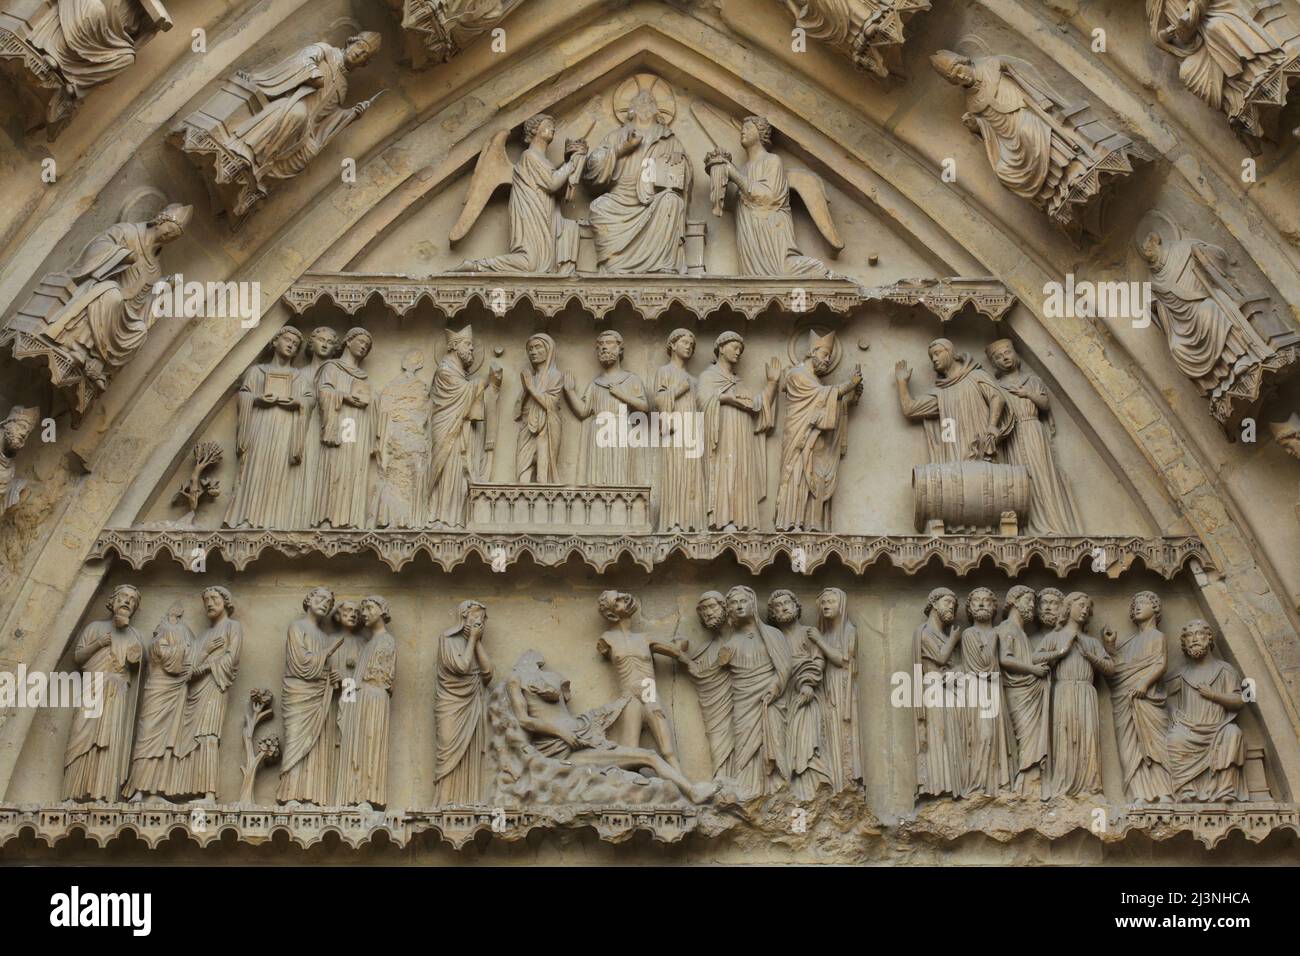 Miracoli di San Remigio di Reims (livello superiore) e la storia biblica di Giobbe (livello inferiore) raffigurata nel timpano del portale centrale della facciata nord della Cattedrale di Reims (Cathédrale Notre-Dame de Reims) a Reims, Francia. Foto Stock